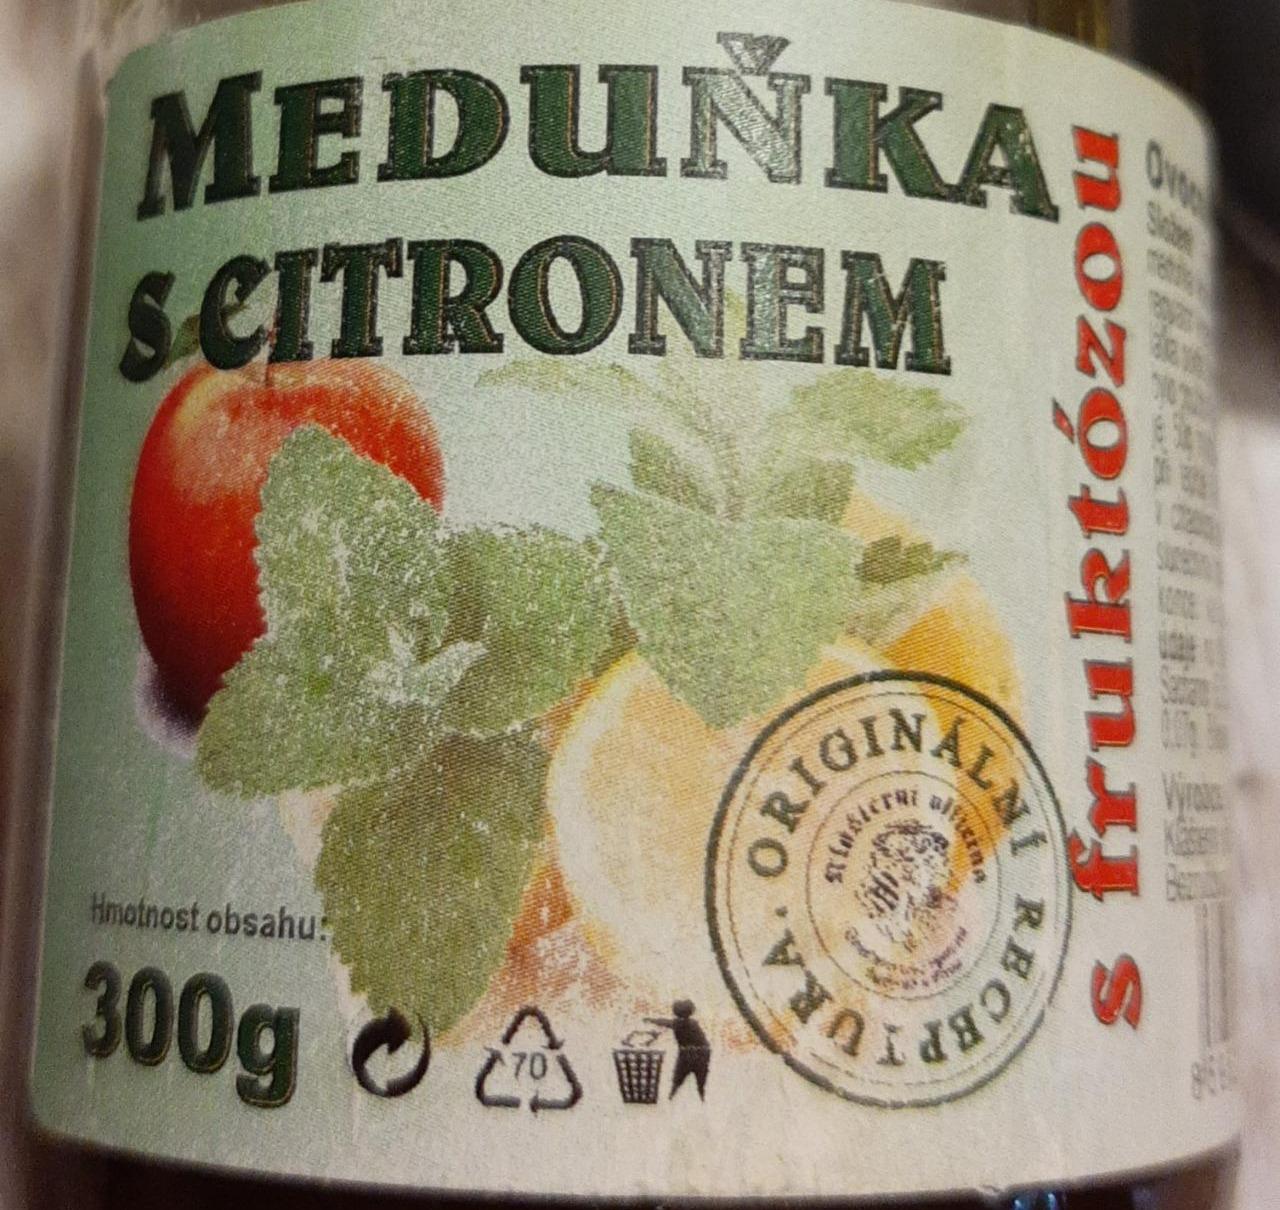 Fotografie - Meduňka s citronem s fruktózou Klášterní officína